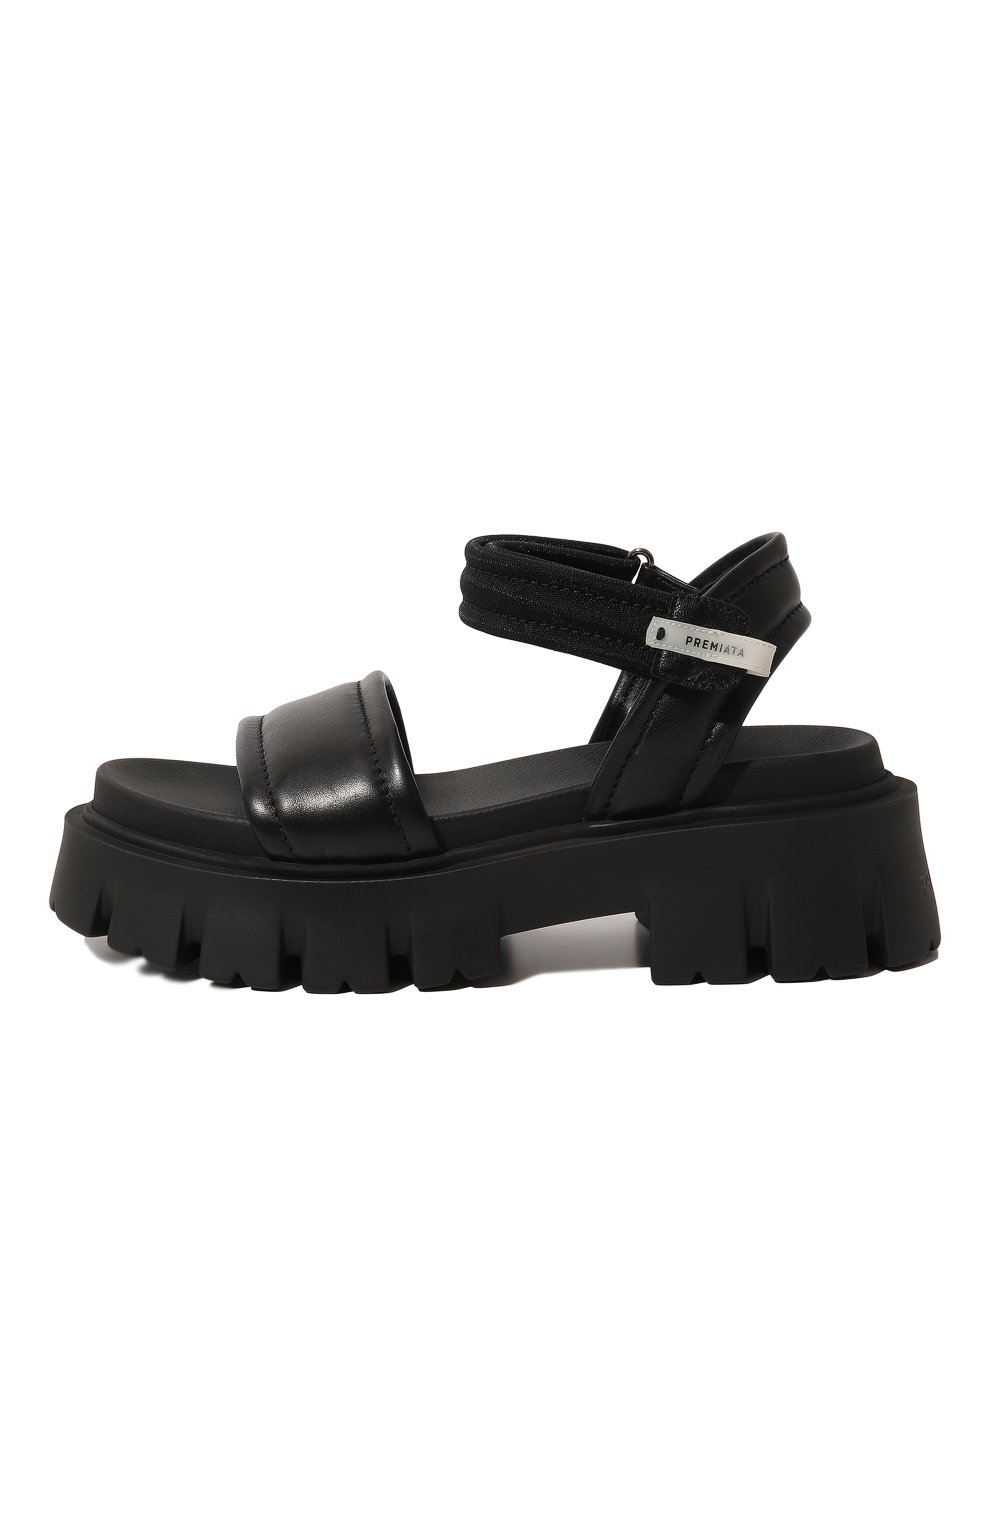 Комбинированные сандалии Premiata M6286/NAPPA EGITT0, цвет чёрный, размер 41 M6286/NAPPA EGITT0 - фото 4